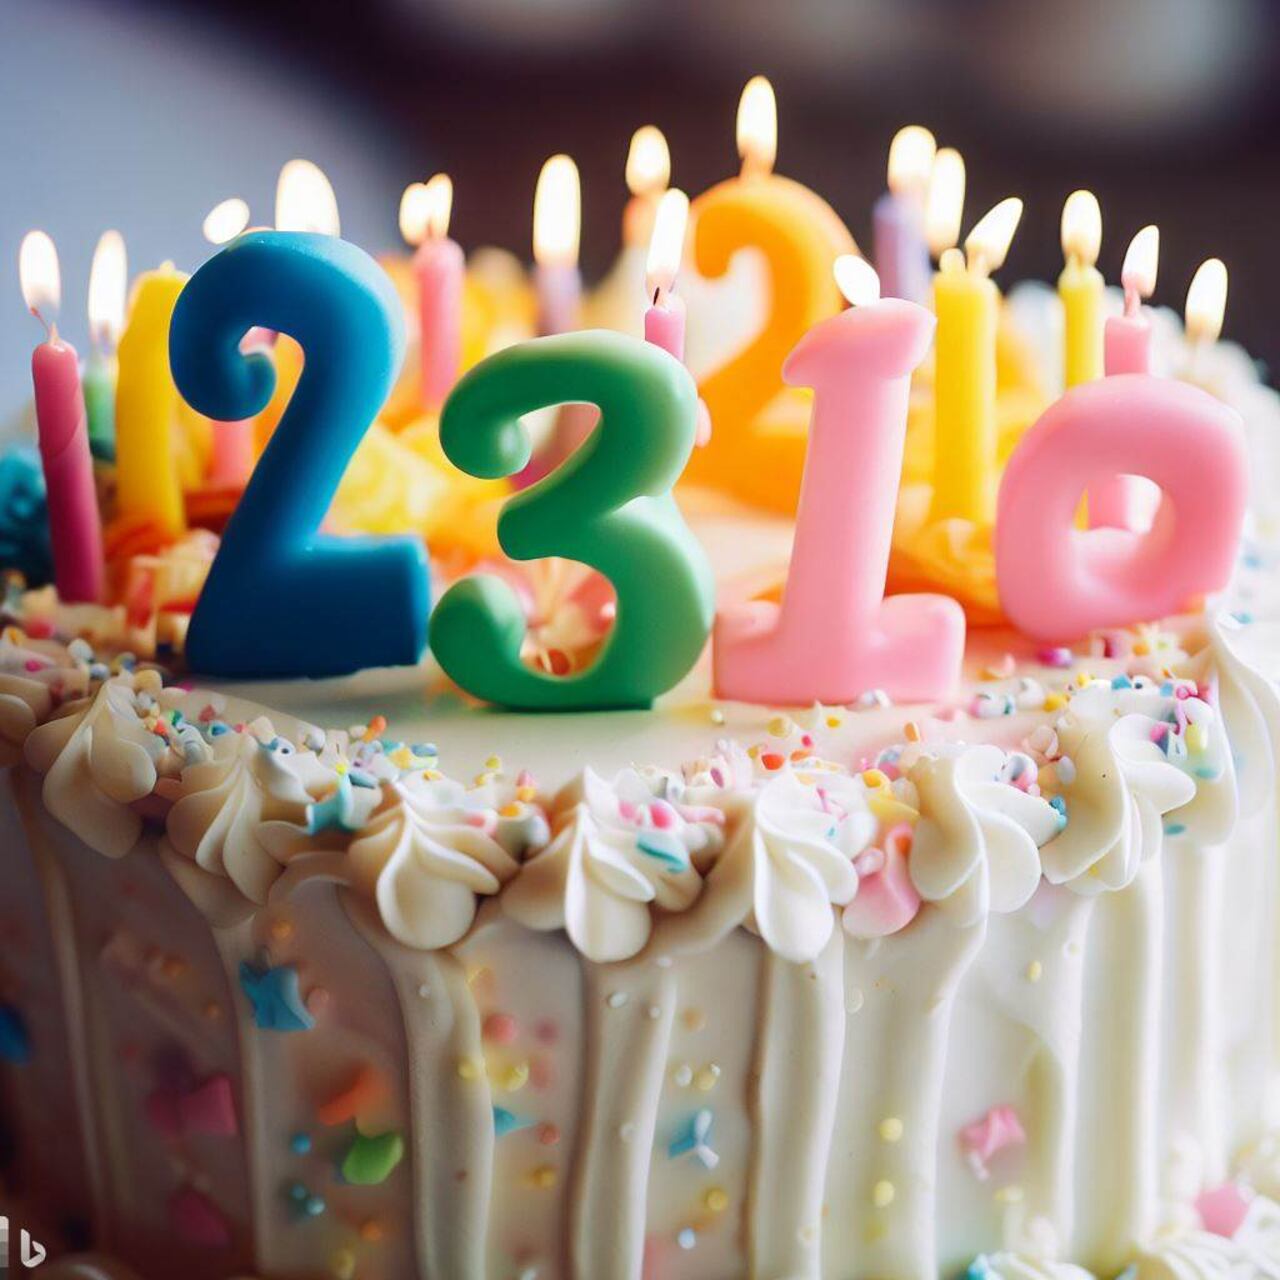 Los números configuran un campo de estudio que también aborda una fecha célebre para las personas: su cumpleaños.